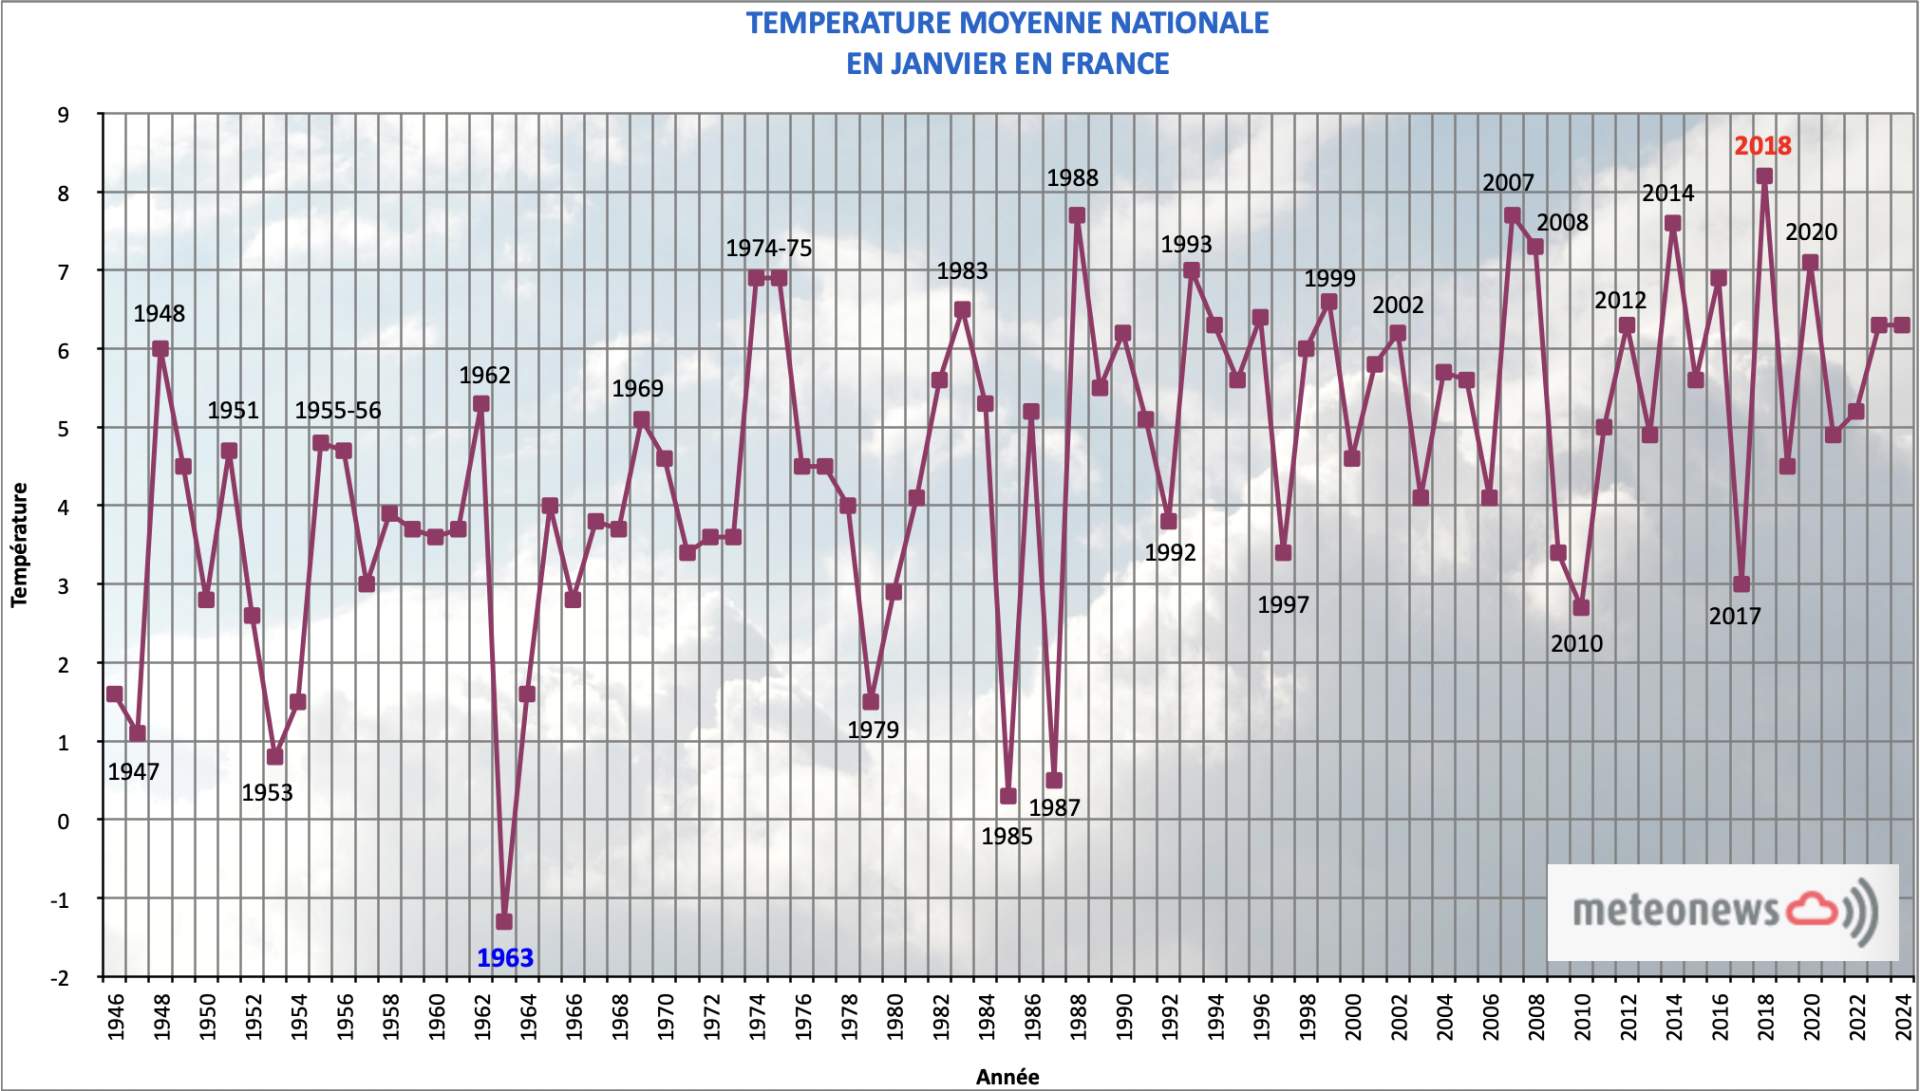 Fig. 1: Température moyenne mensuelle nationale en janvier en France; Source: MeteoNews France